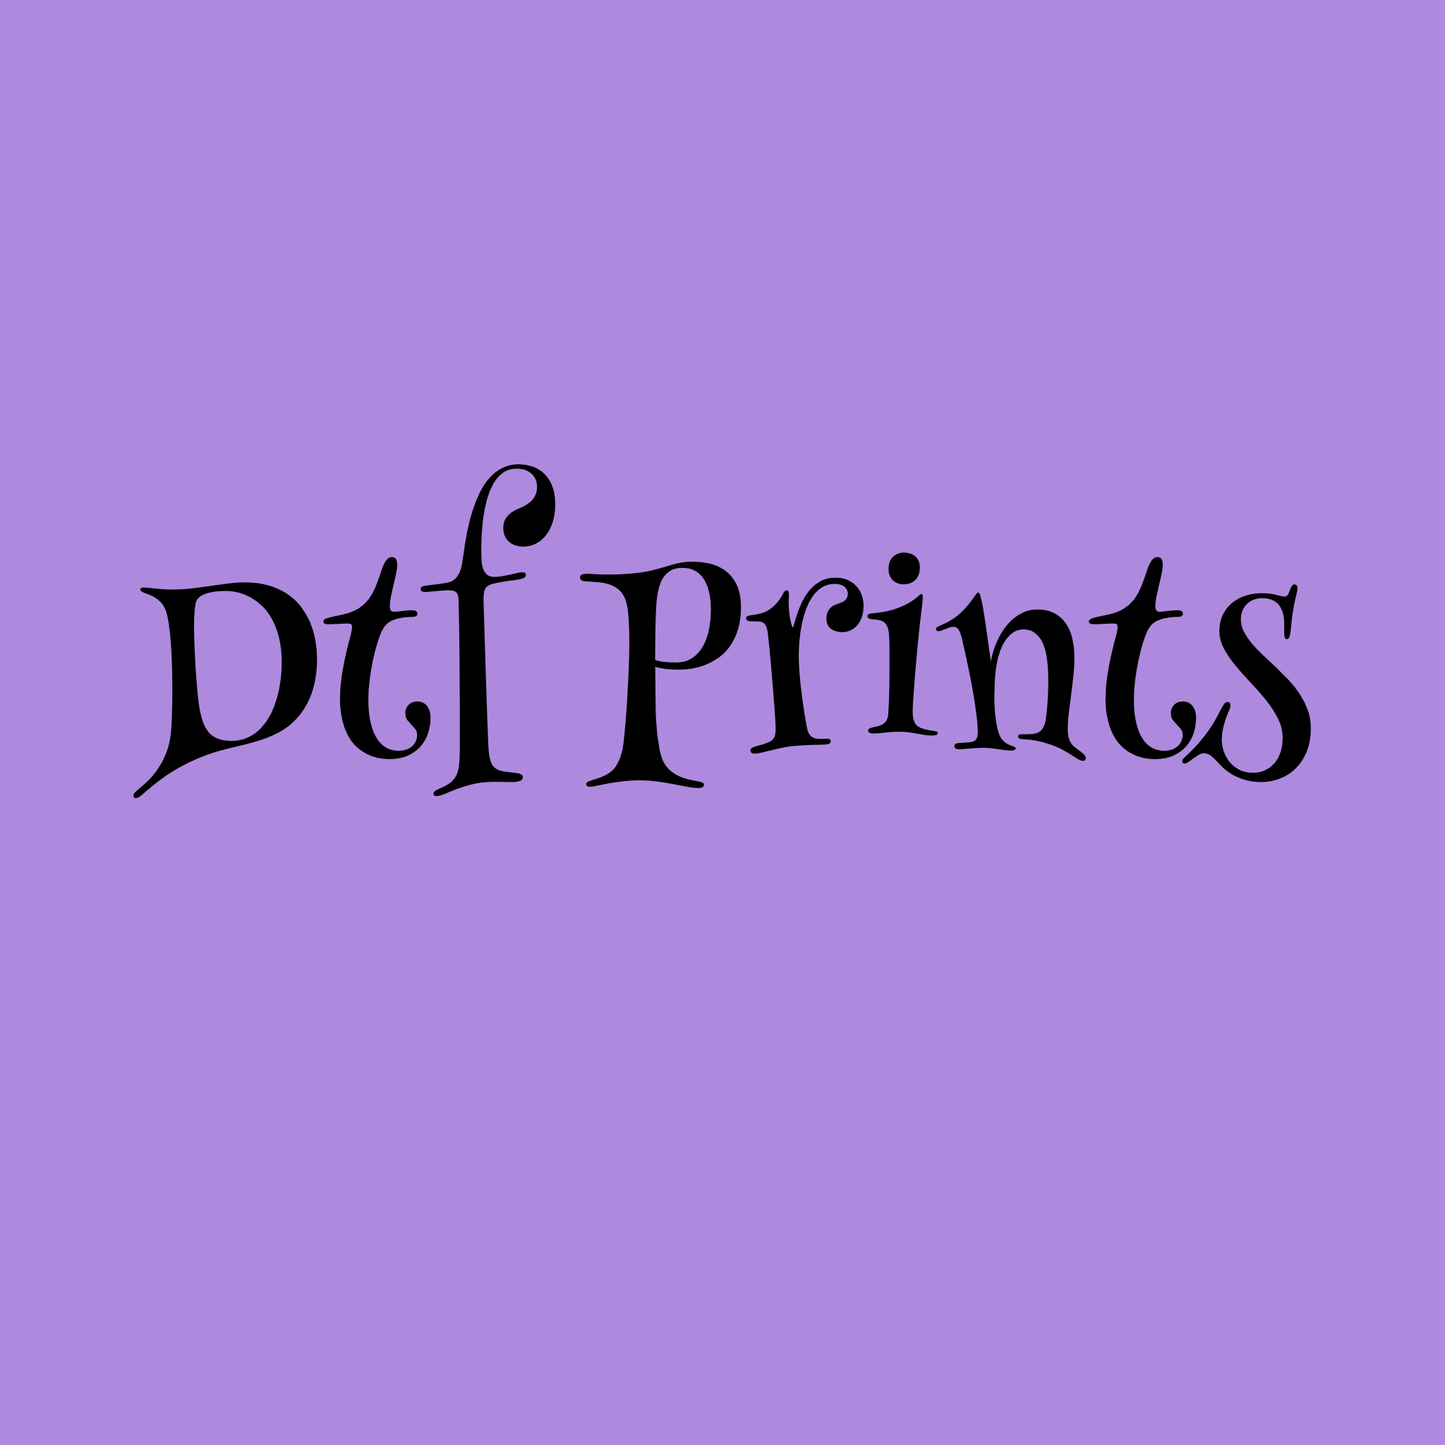 Lauren’s Dtf prints